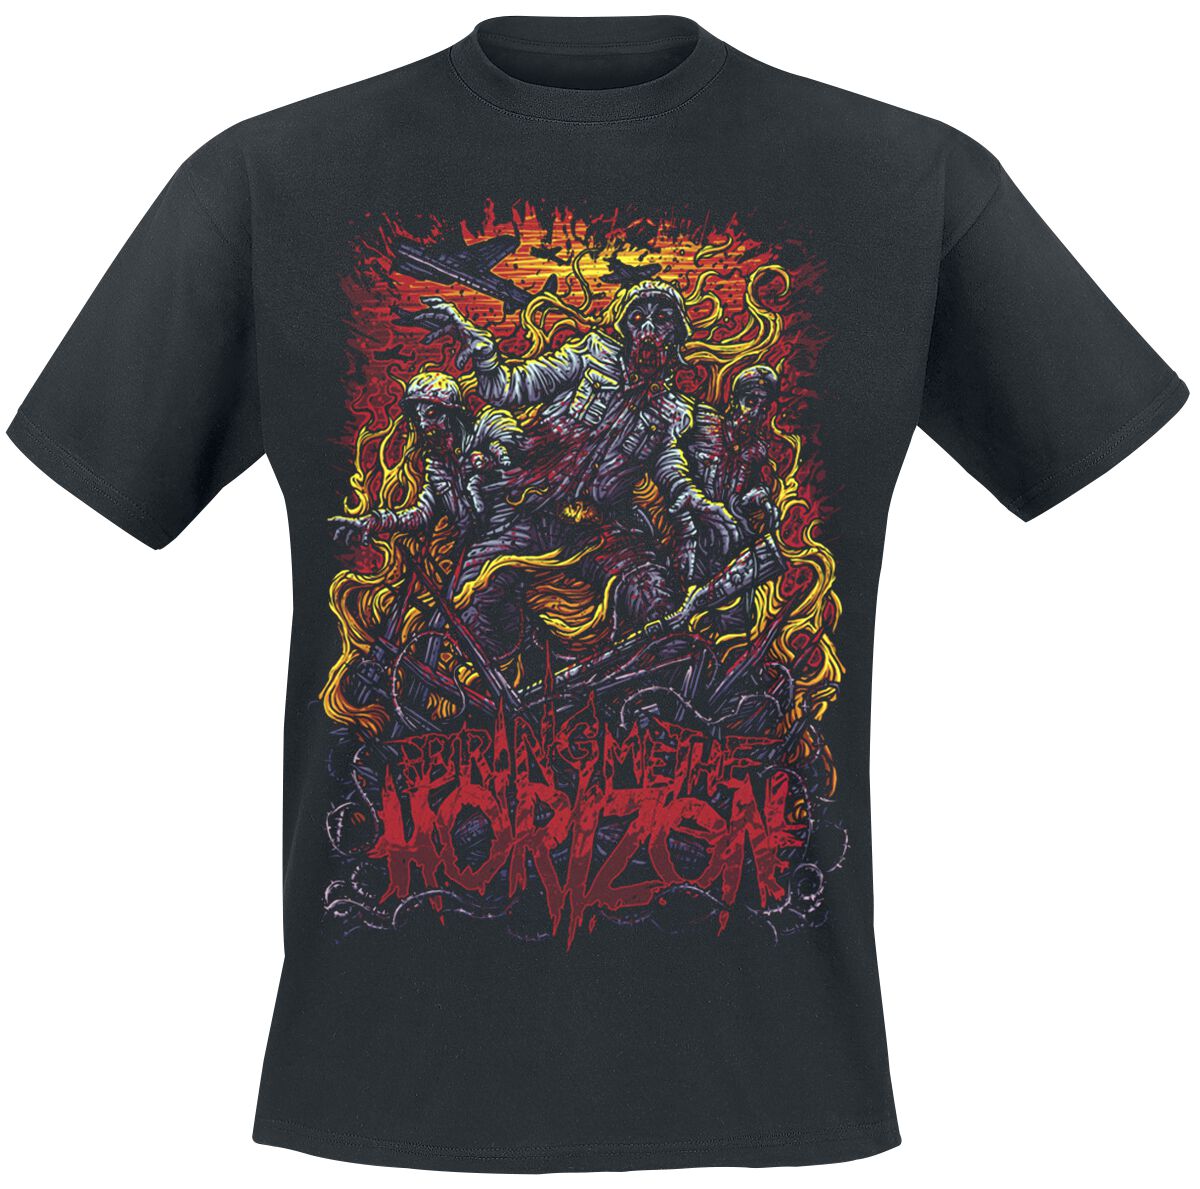 Bring Me The Horizon T-Shirt - Zombie Army - S bis XXL - für Männer - Größe M - schwarz  - Lizenziertes Merchandise!